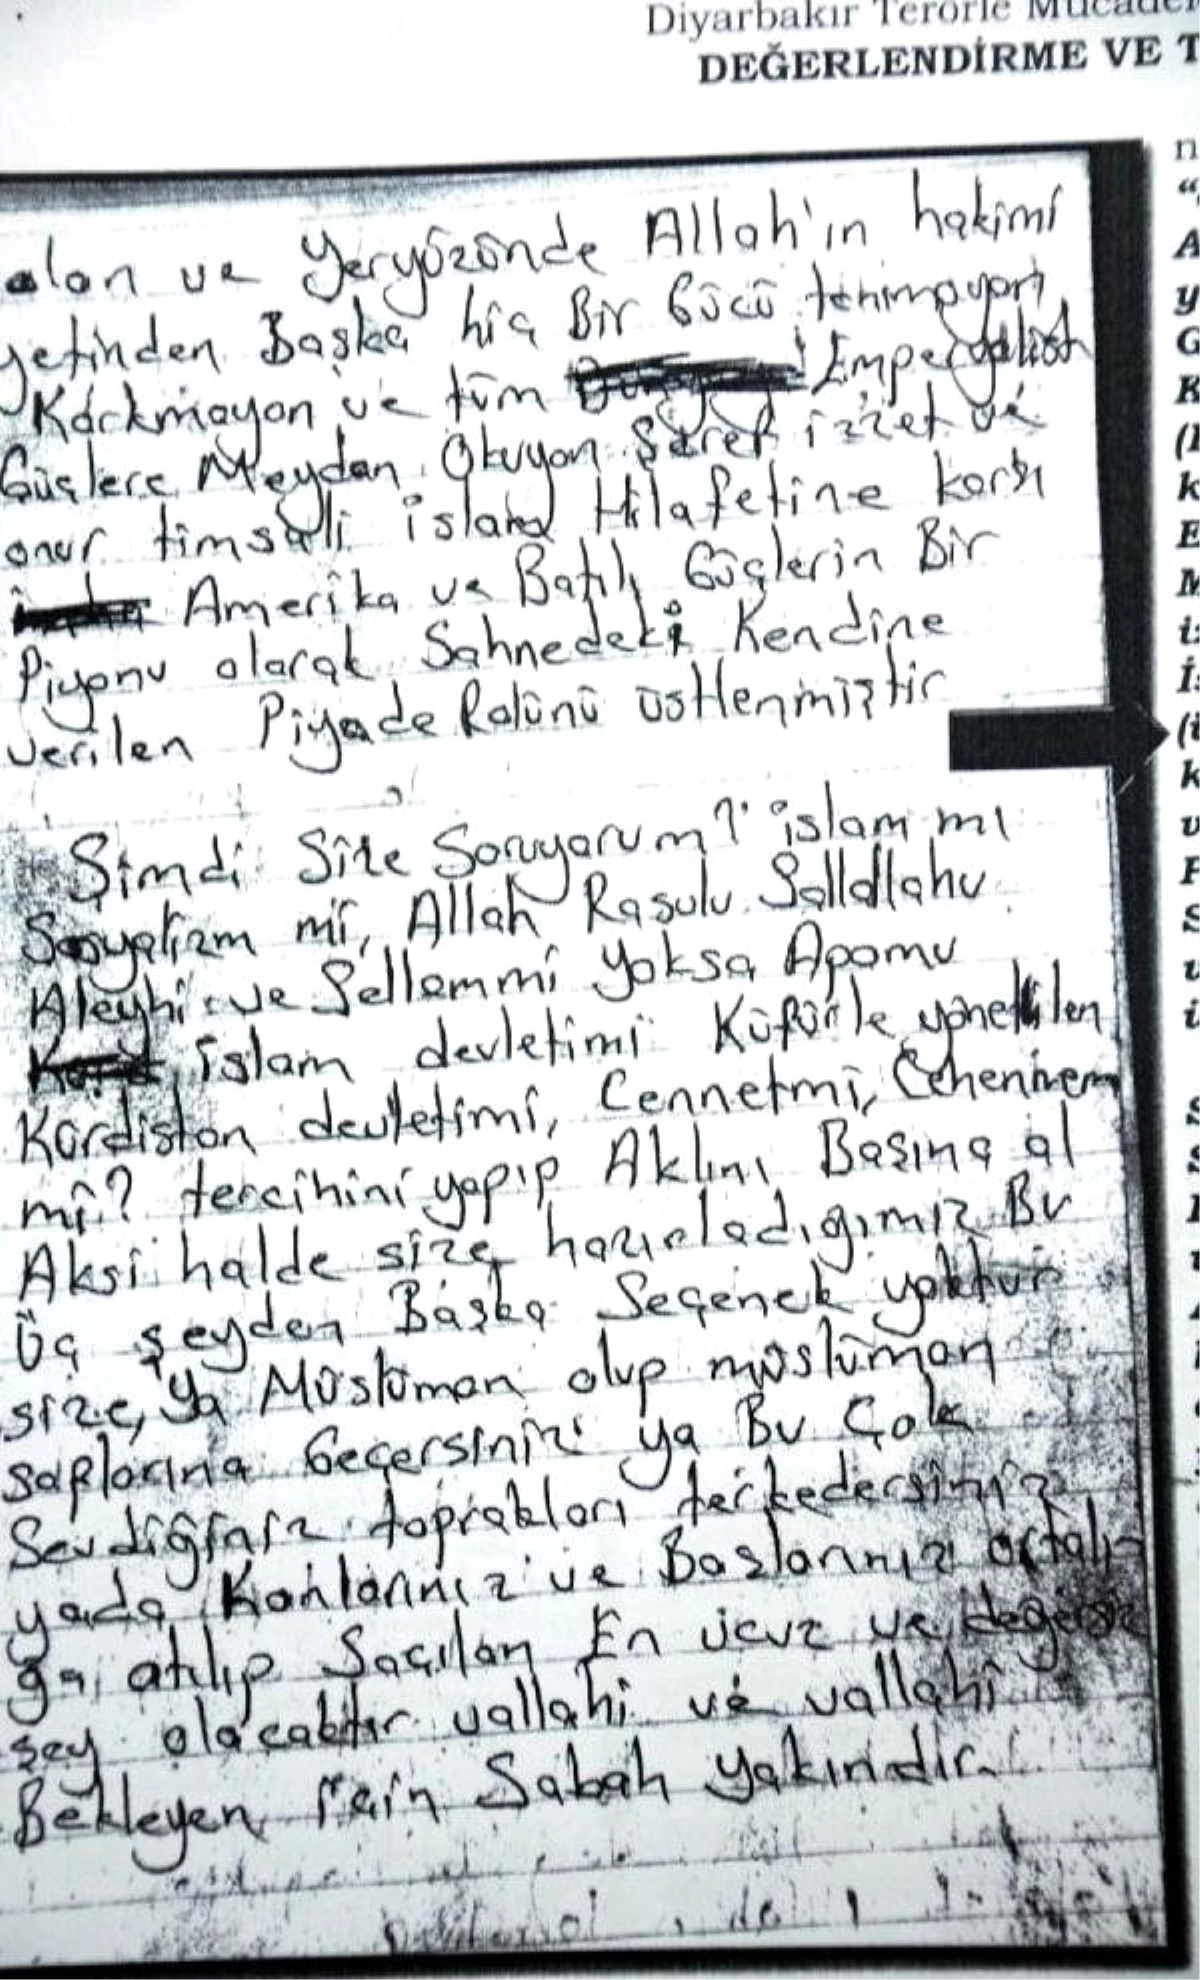 Diyarbakır\'da Öldürülen IŞİD\'cinin Kan Donduran Vasiyet Mektubu!